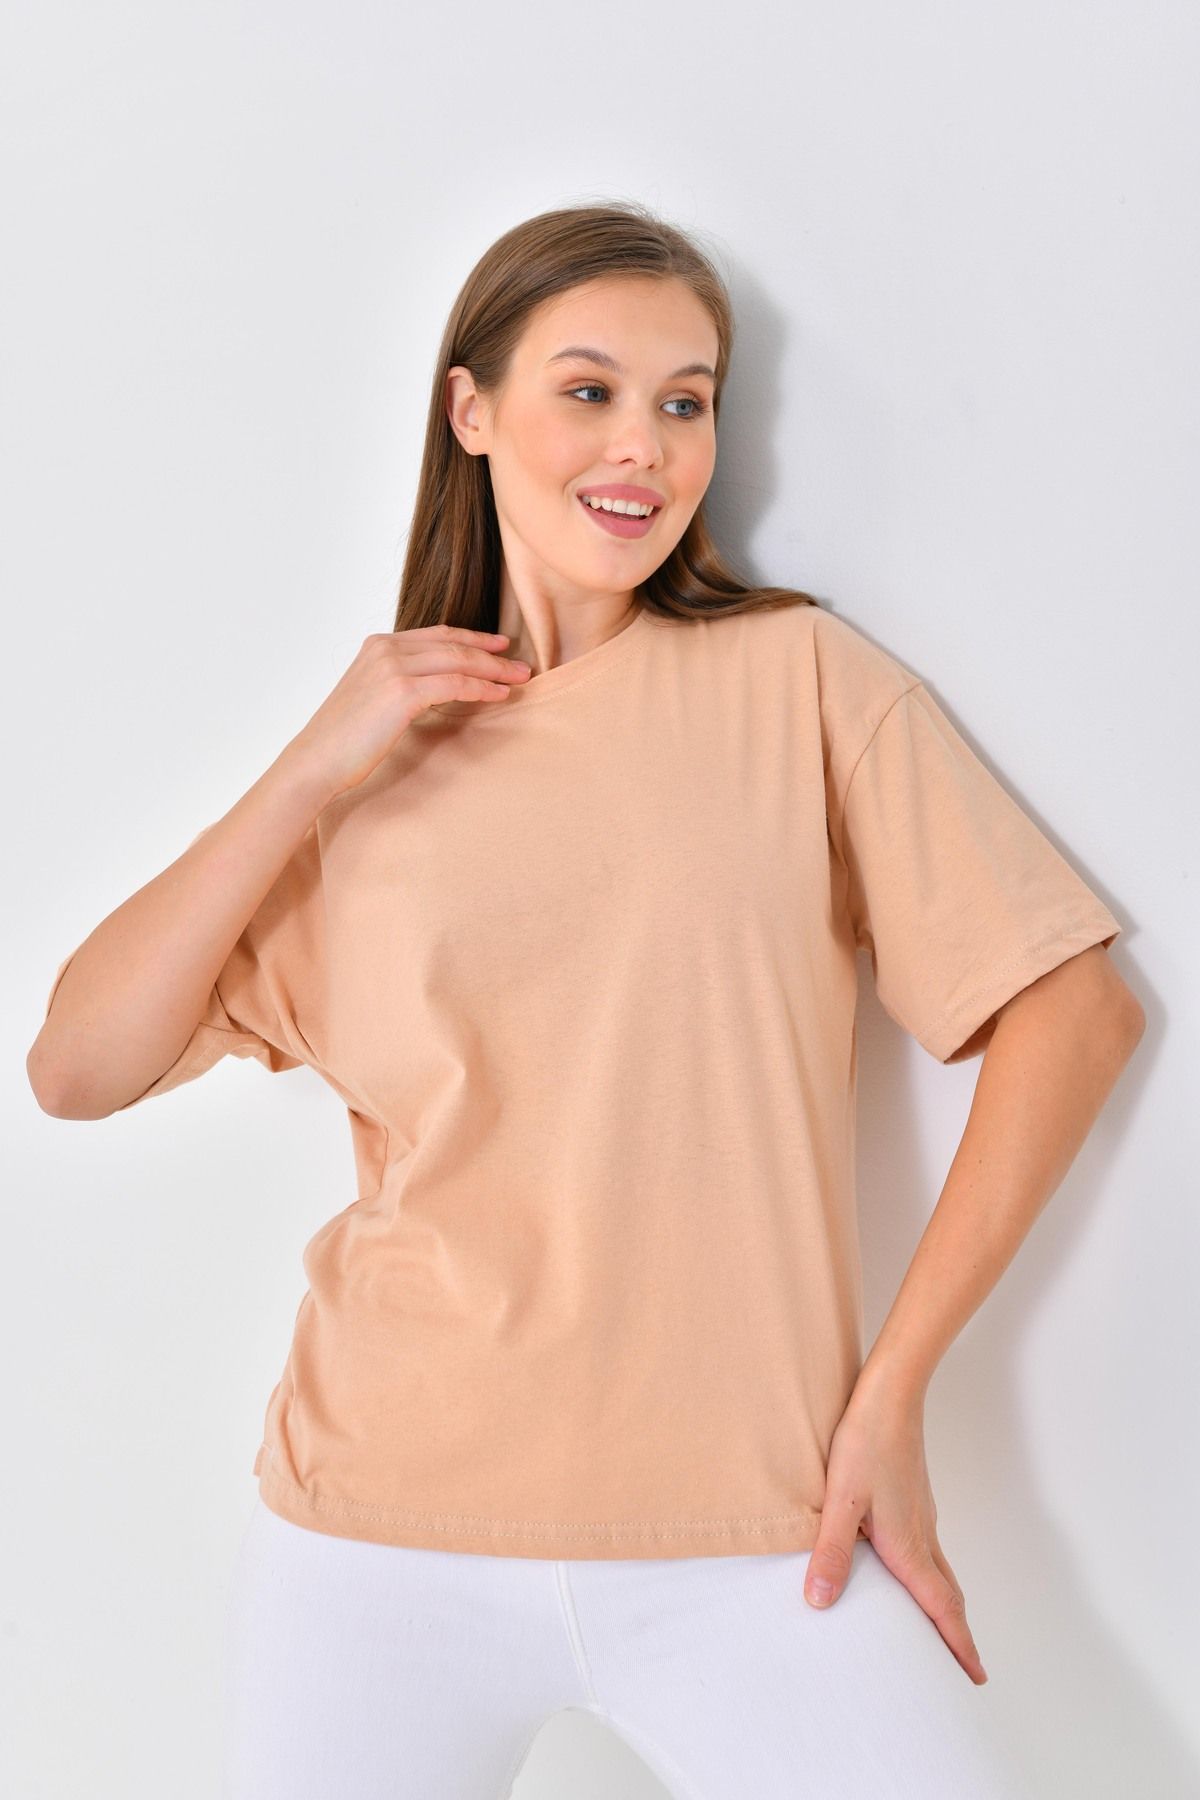 mirach %100 Pamuk Tişört Kısa Kollu Düz Model Kadın T-shirt Pamuklu Tişört Somon (BANDANA HEDİYELİ)